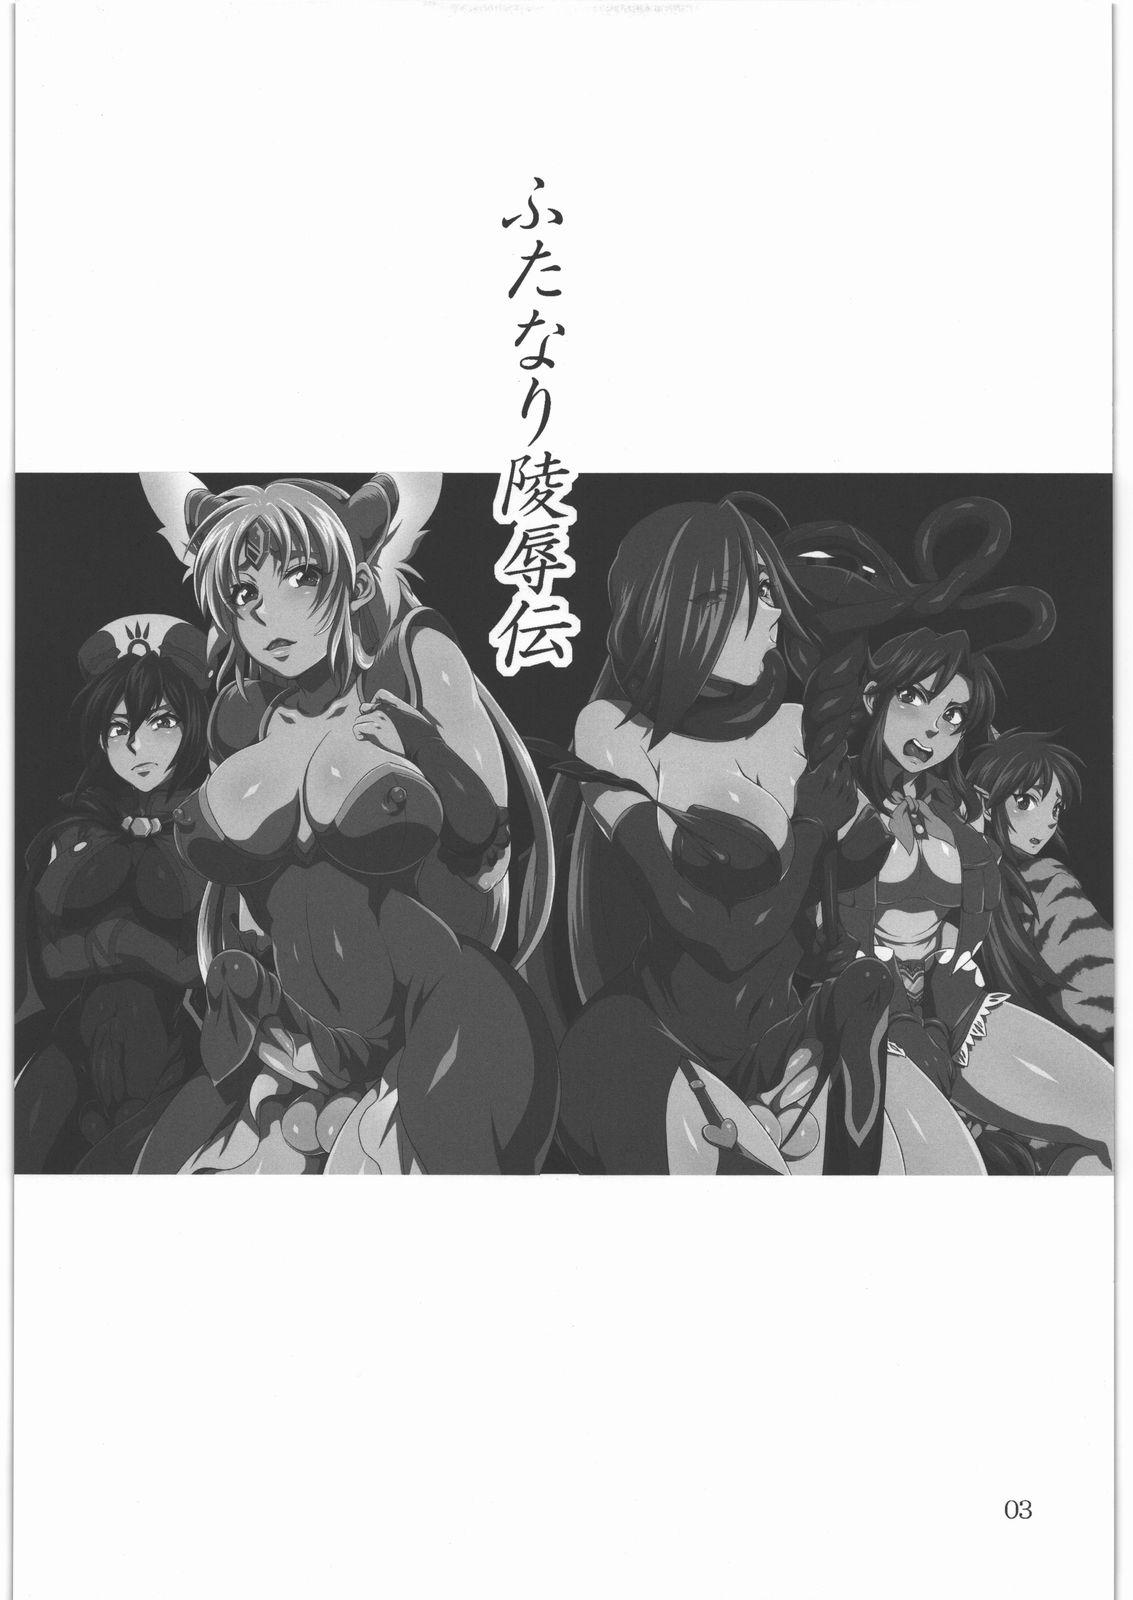 Voyeursex Futanari Ryoujoku den - Queens blade Seiken densetsu 3 Tales of legendia Letsdoeit - Page 2